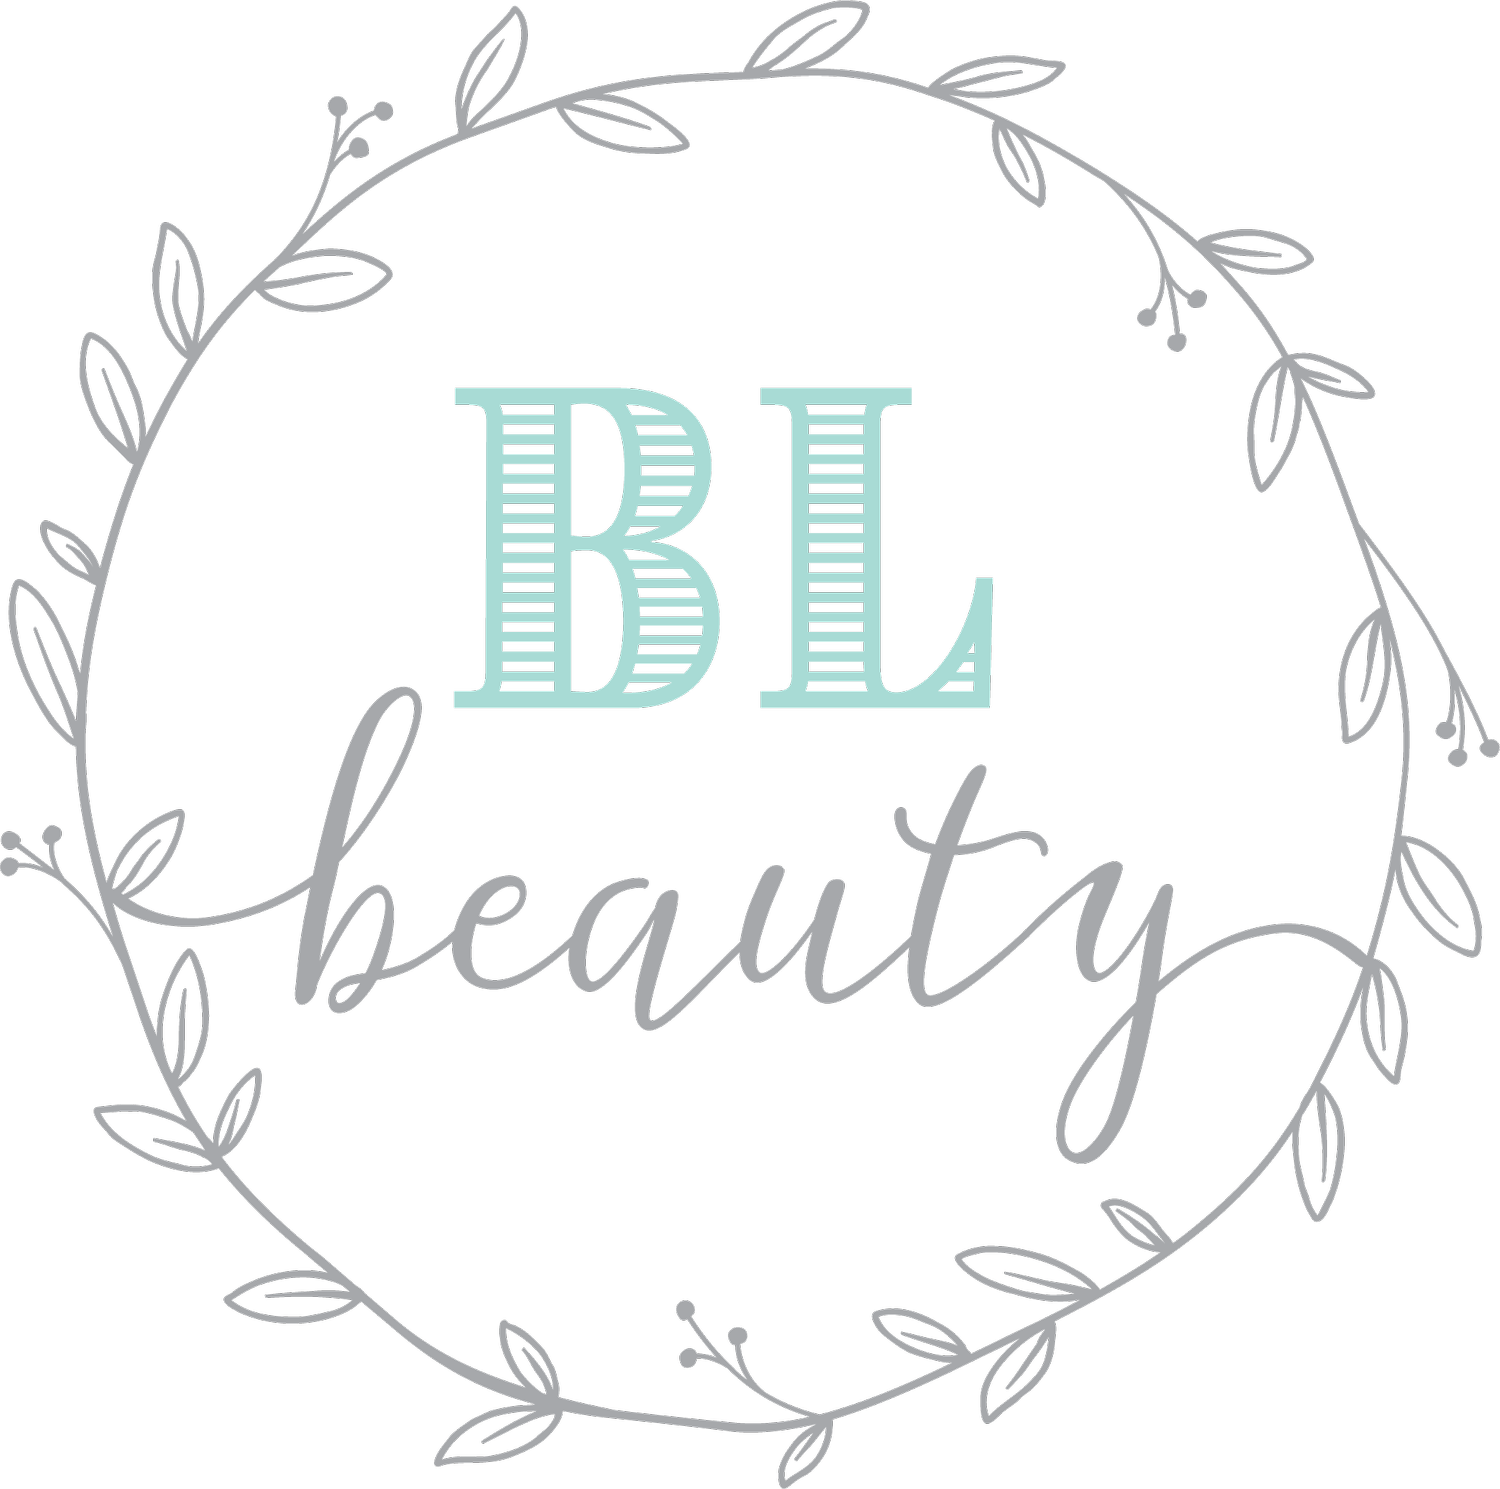 BL Beauty based in Woonsocket, RI 